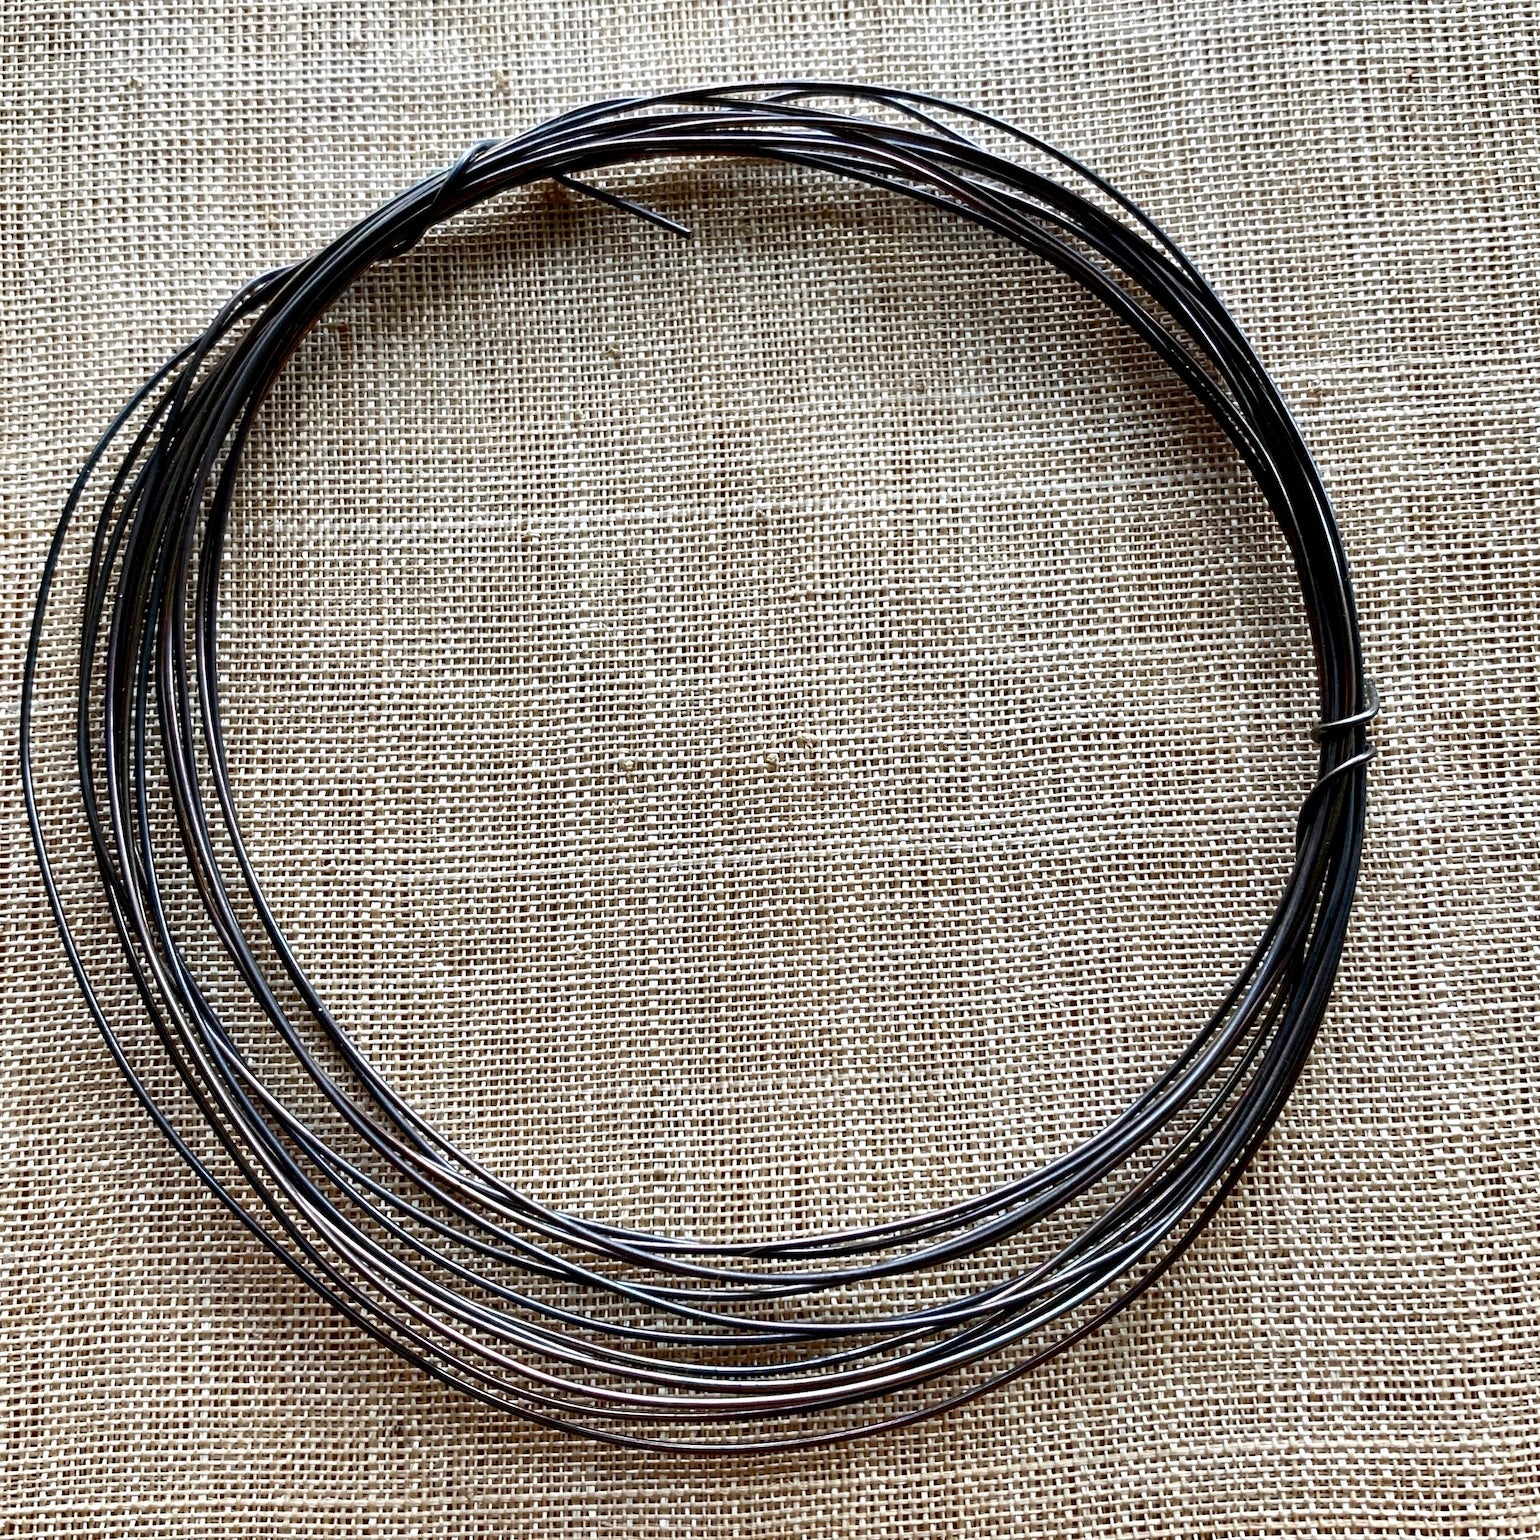 Oxidized Sterling Silver Wire-22Ga Half Hard (Sold per foot).